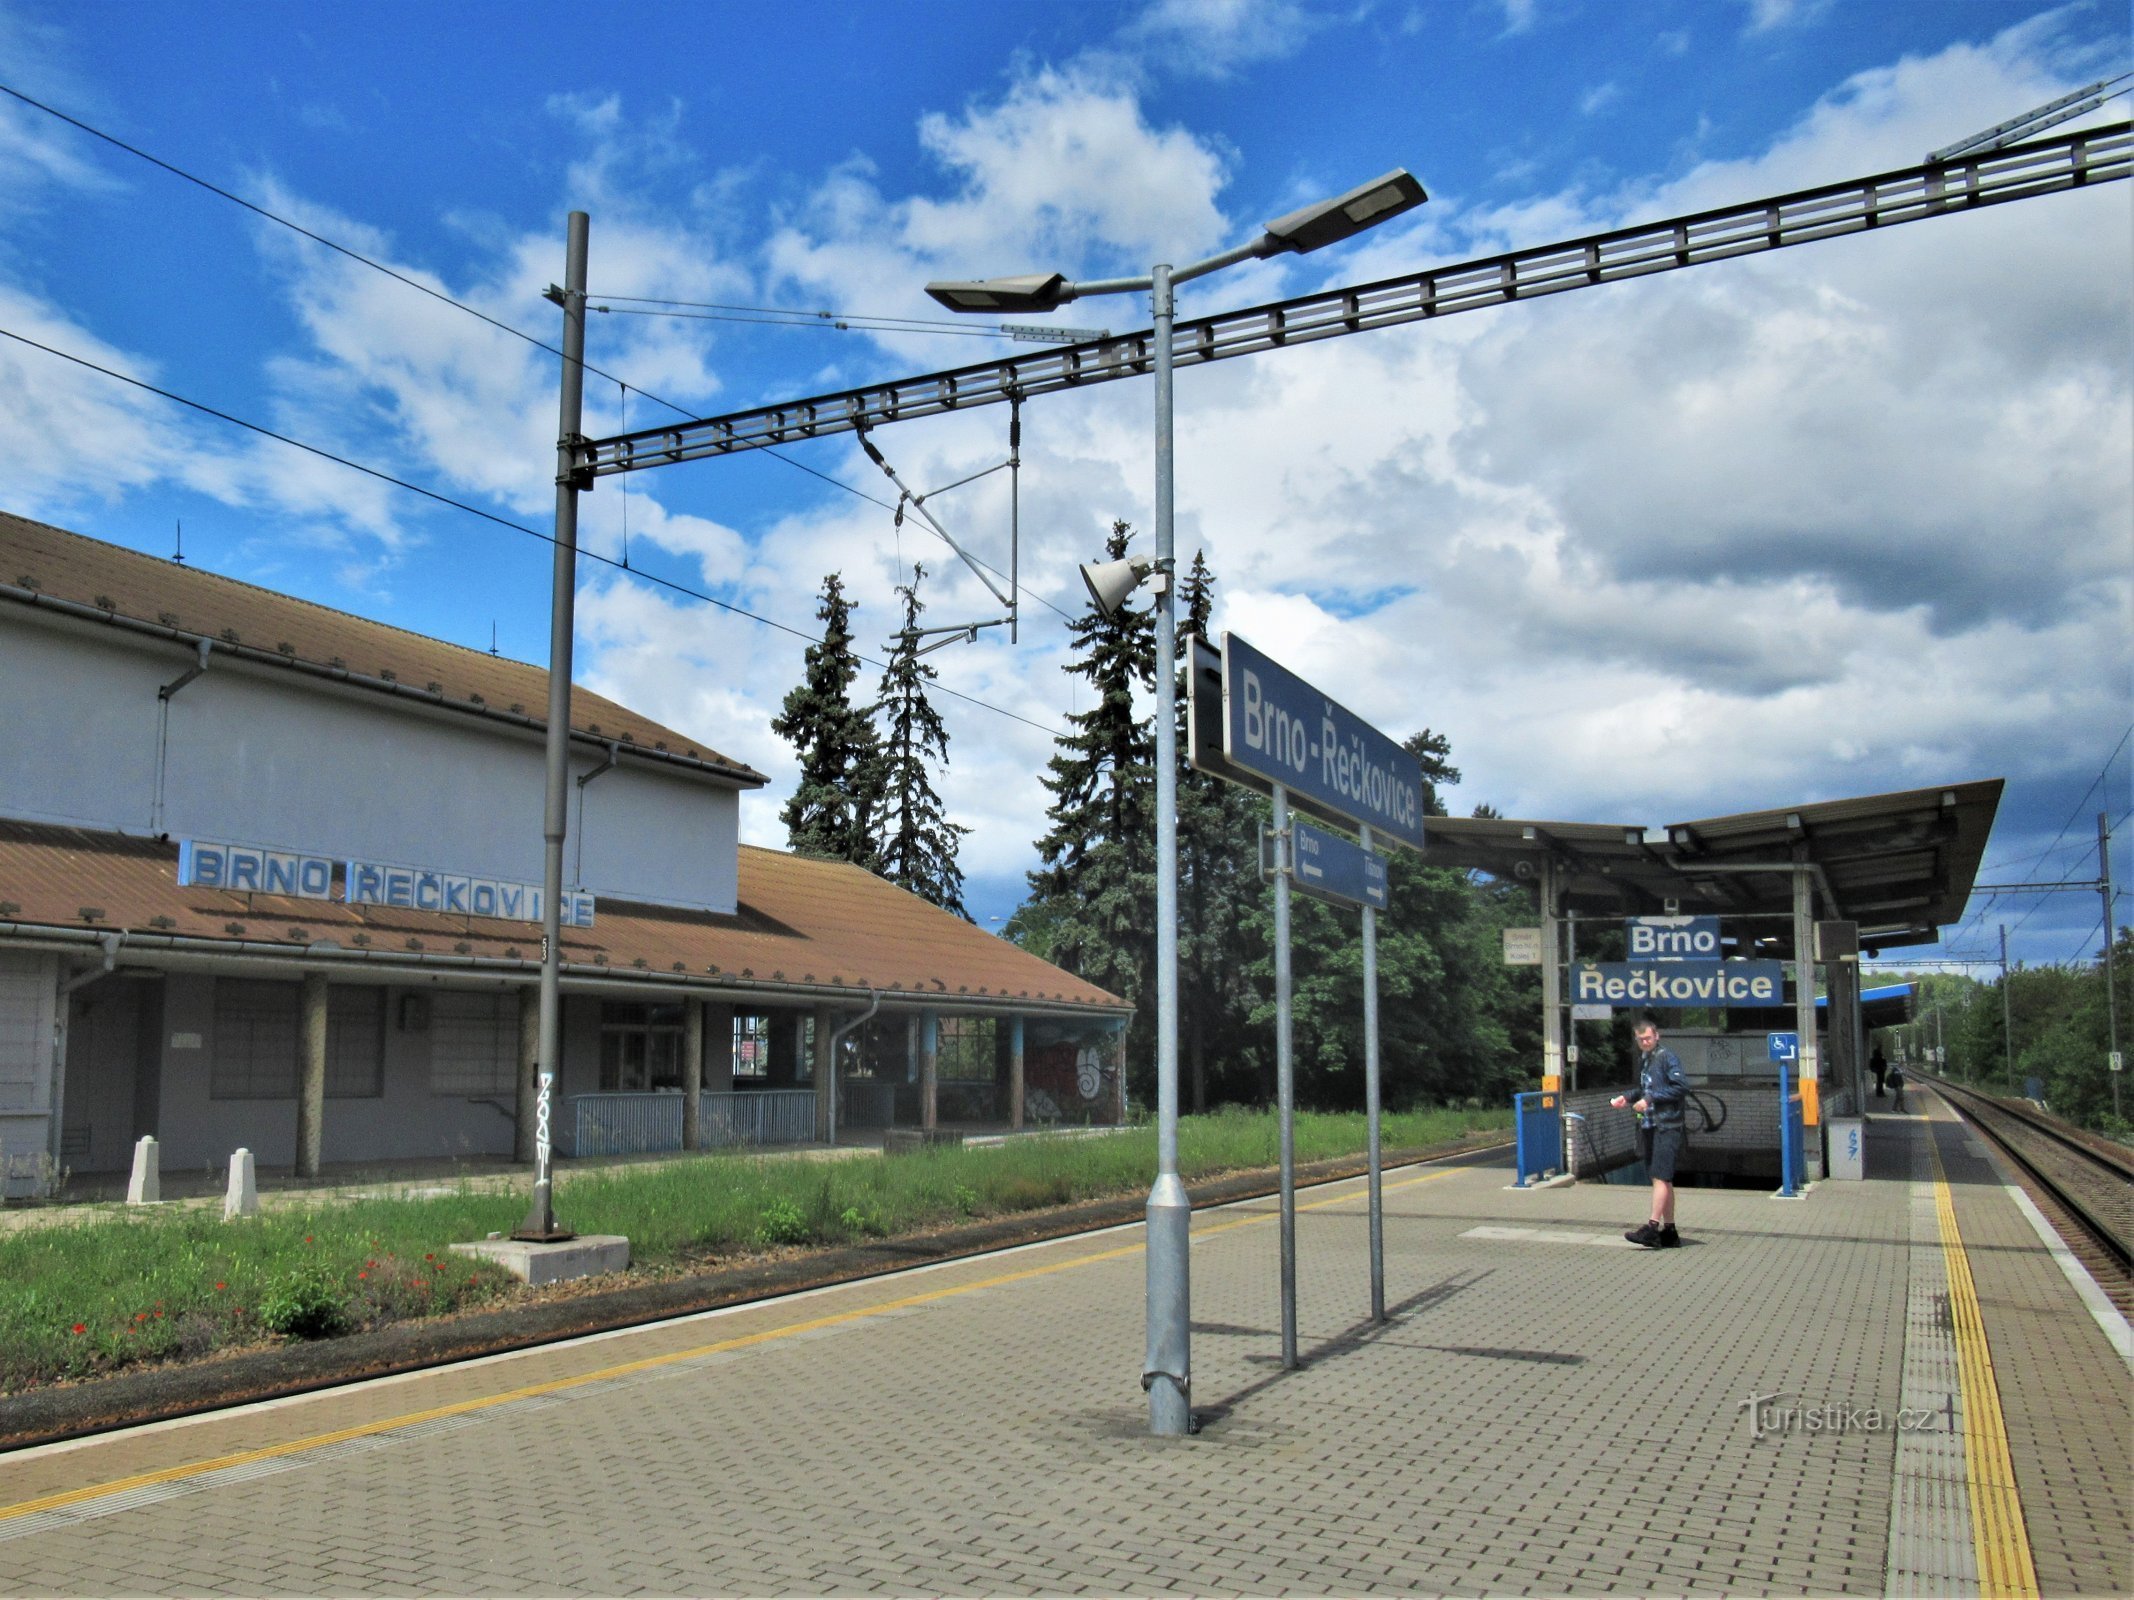 Estación de tren de Brno-Řečkovice